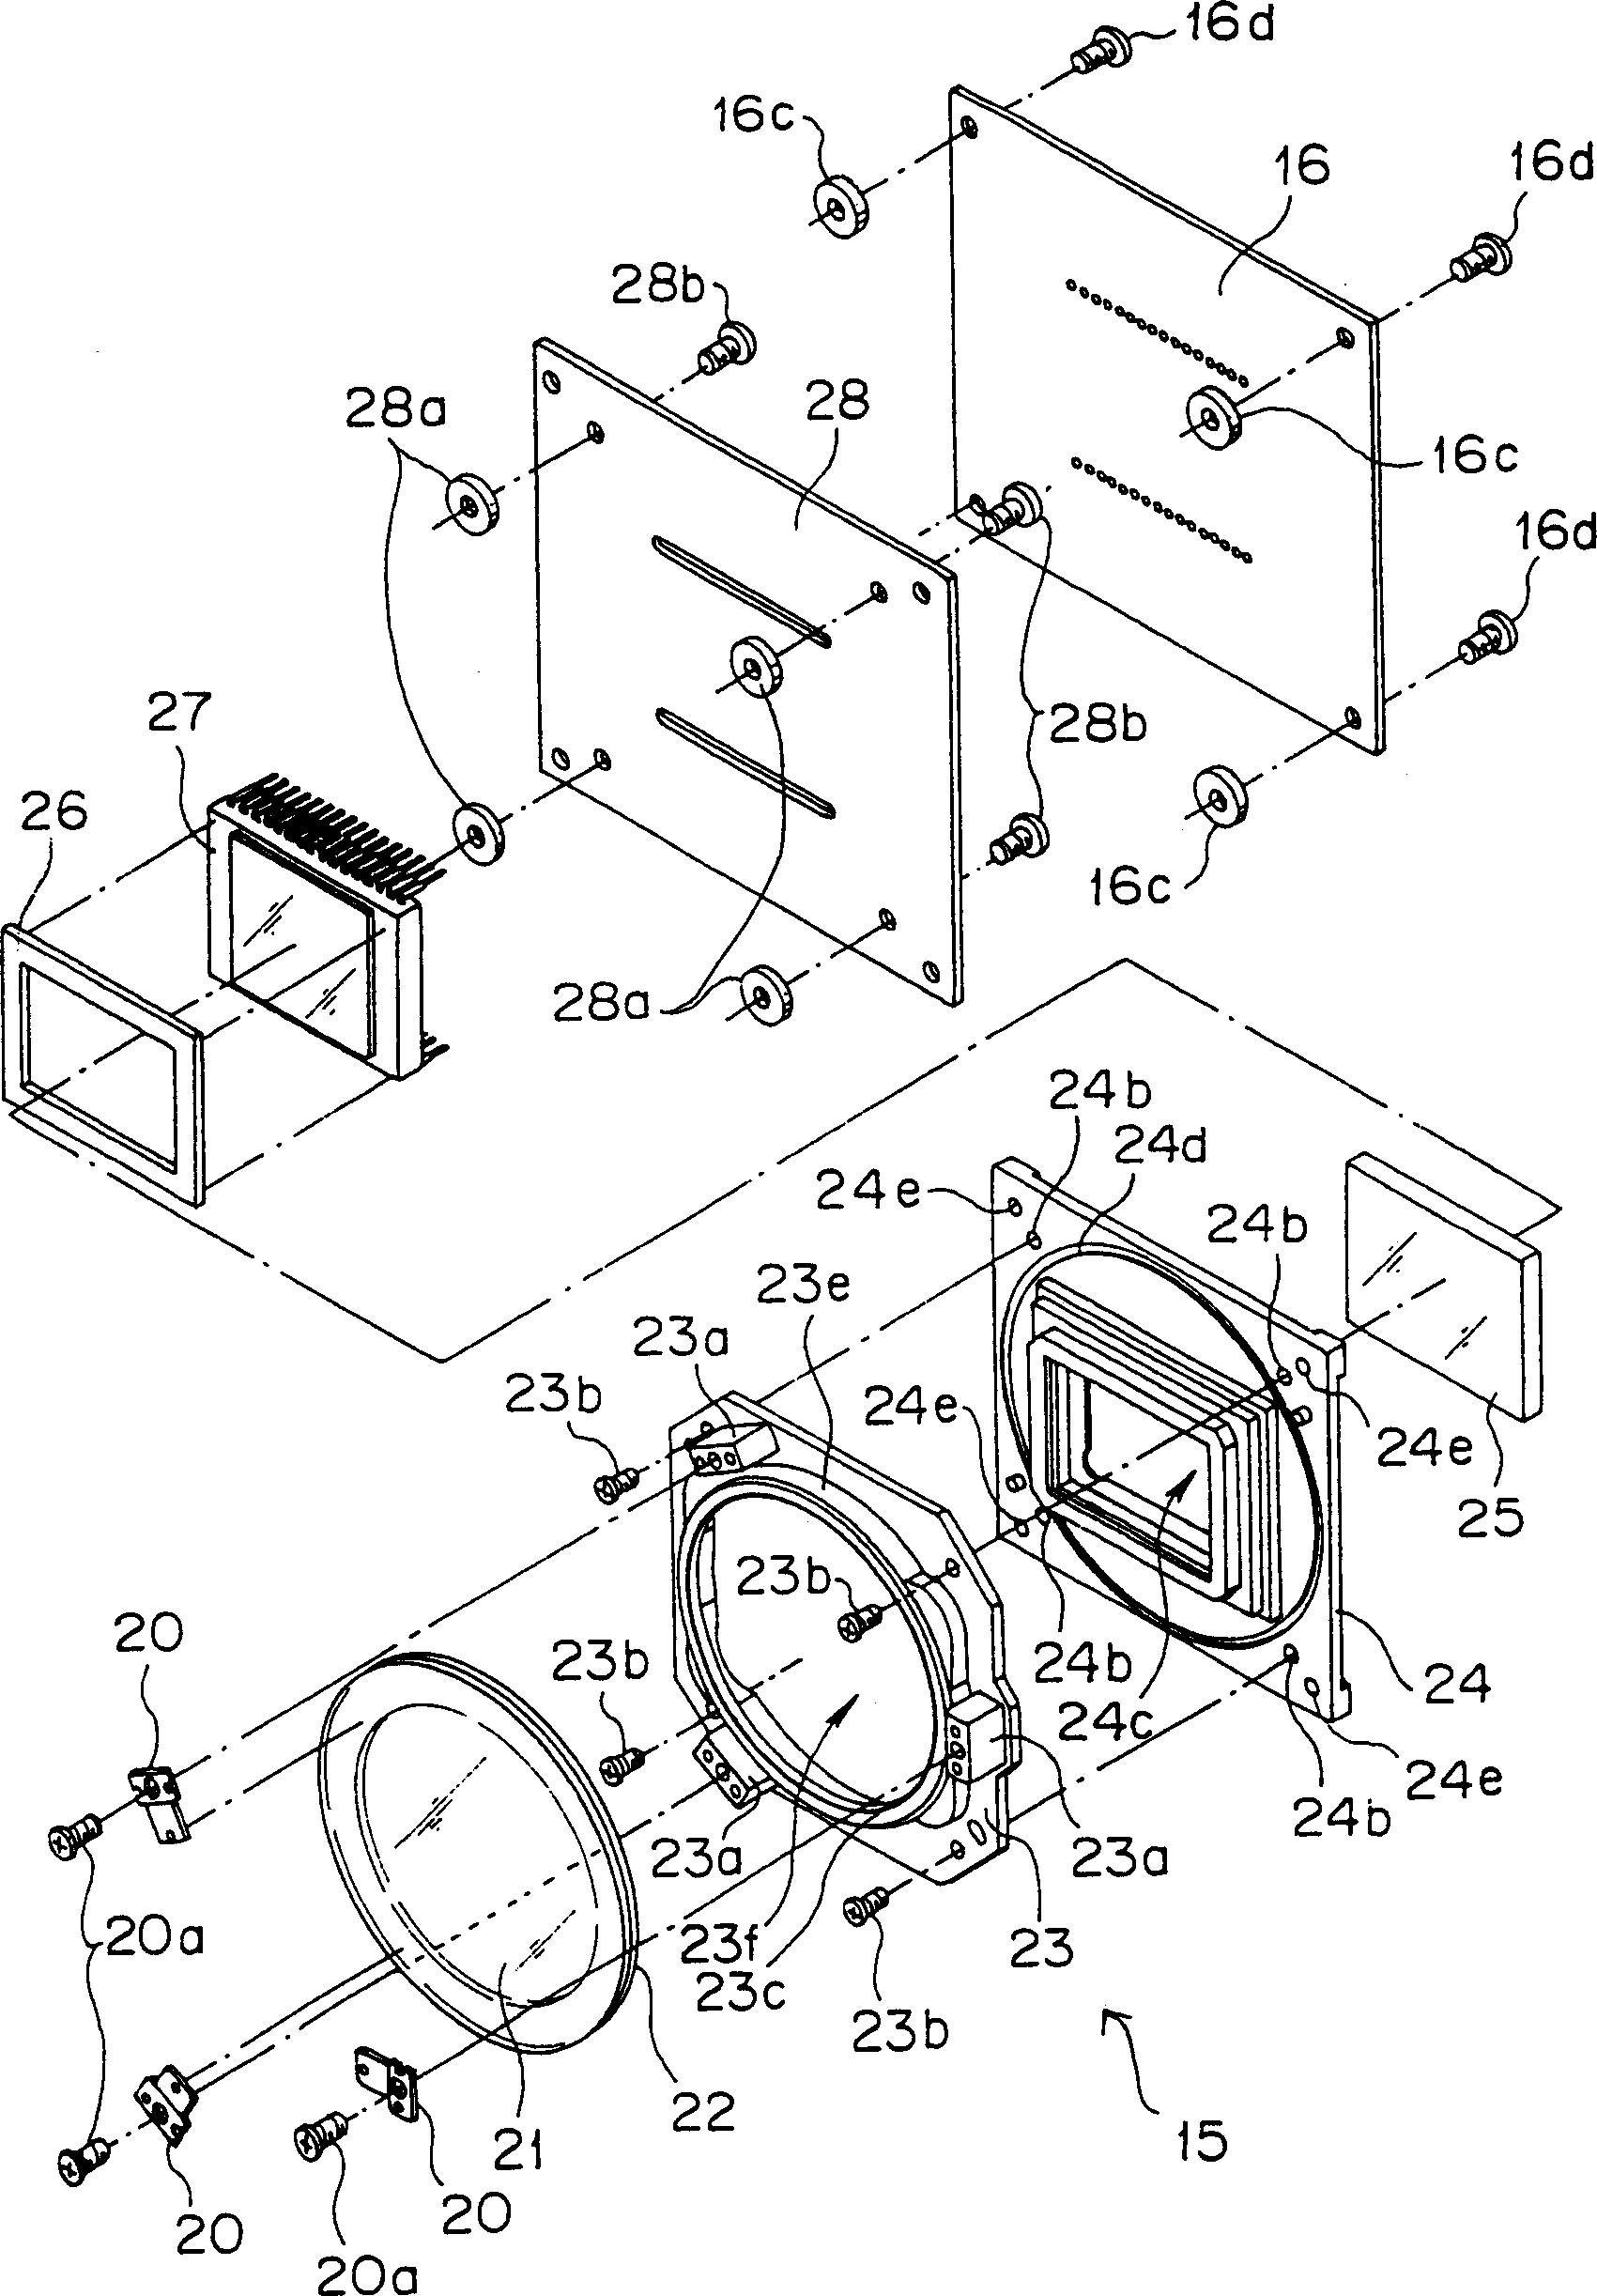 Camera and camera element unit